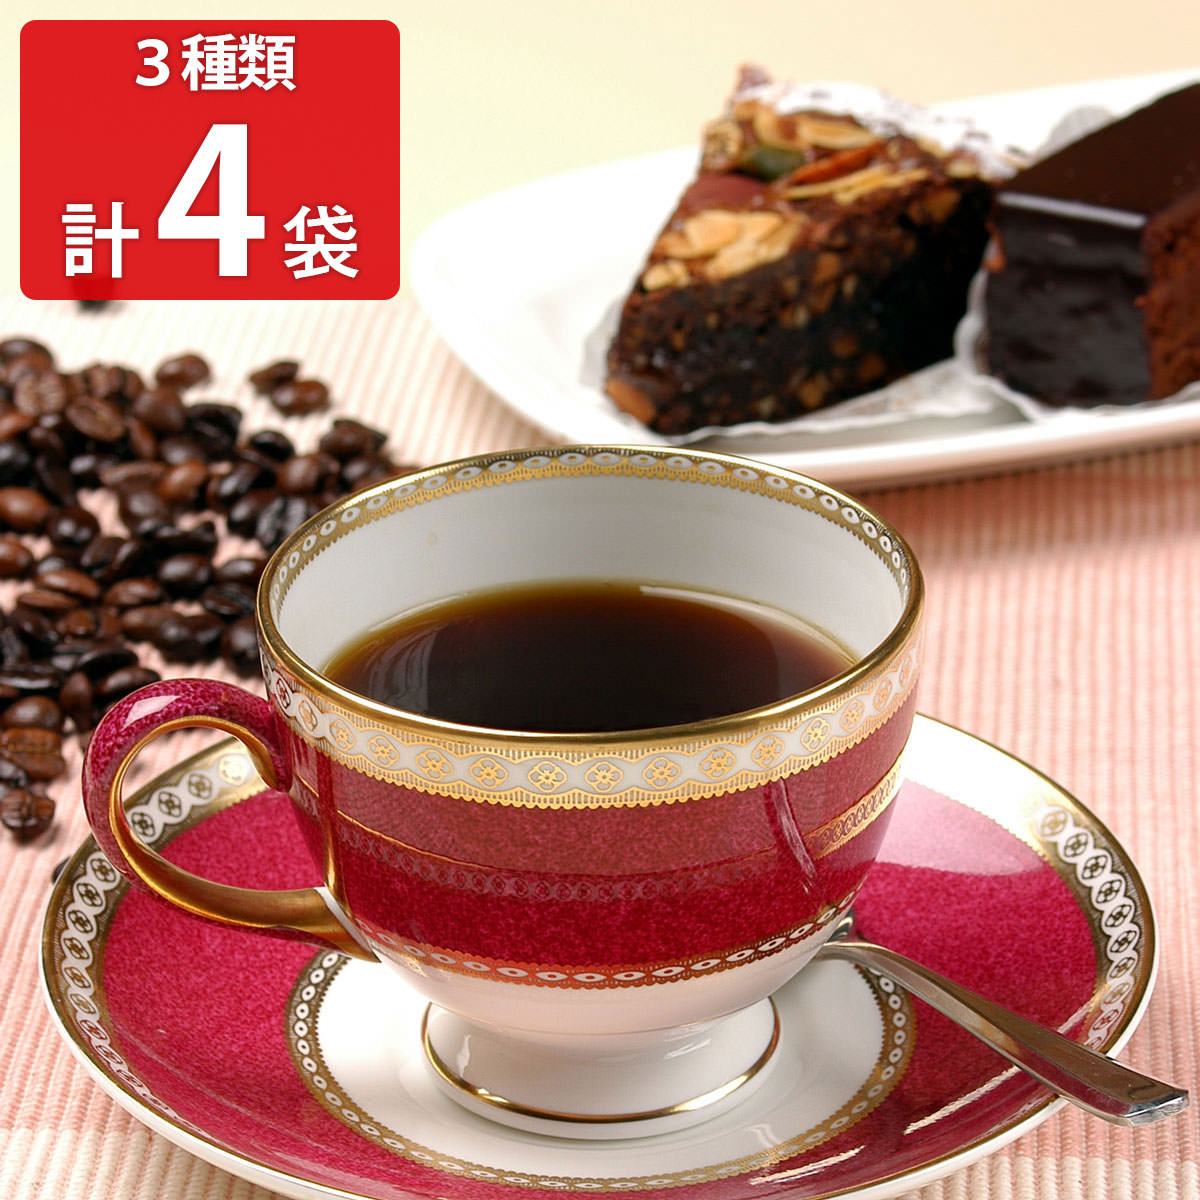 麻布タカノ コーヒー詰合せ40 コーヒー 詰め合わせ コーヒー粉 中細挽き 有機コーヒー メロウブレンド ブレンドコーヒー 珈琲